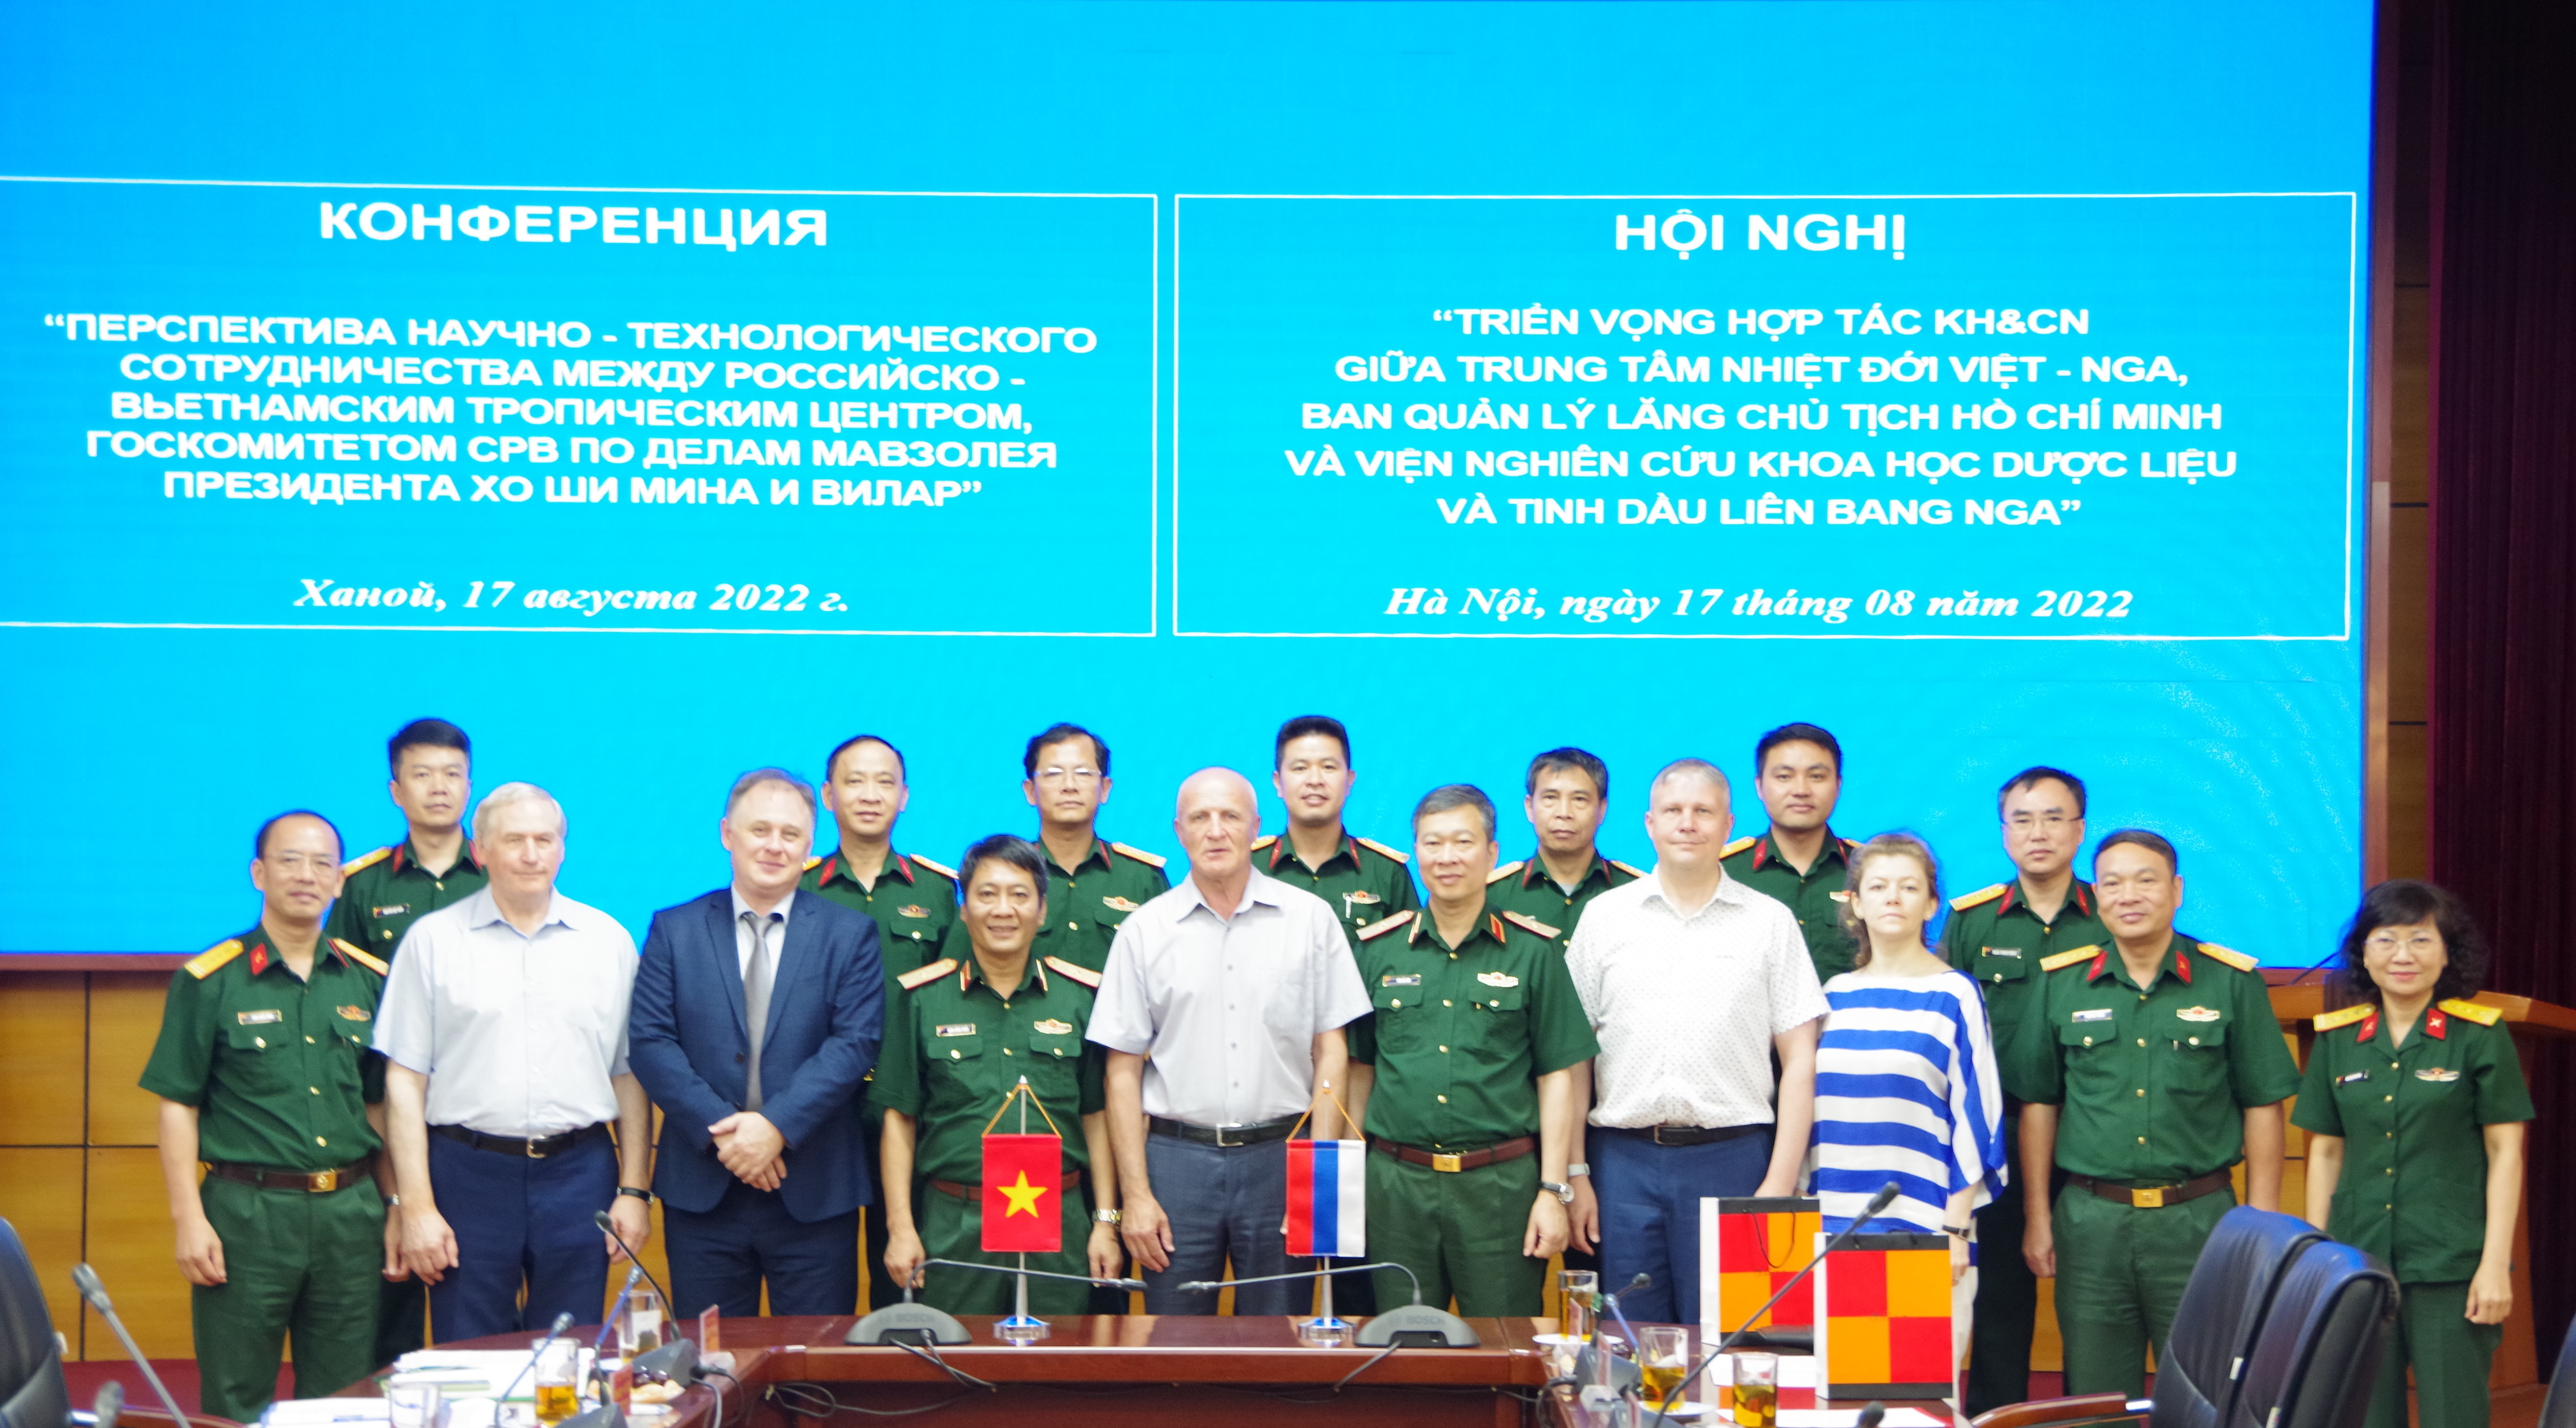 Hội nghị "Triển vọng hợp tác KH&CN giữa Trung tâm Nhiệt đới Việt - Nga, Bộ tư lệnh Bảo vệ Lăng Chủ tịch Hồ Chí Minh và viện Nghiên cứu khoa học Dược liệu và Tinh dầu Liên bang Nga